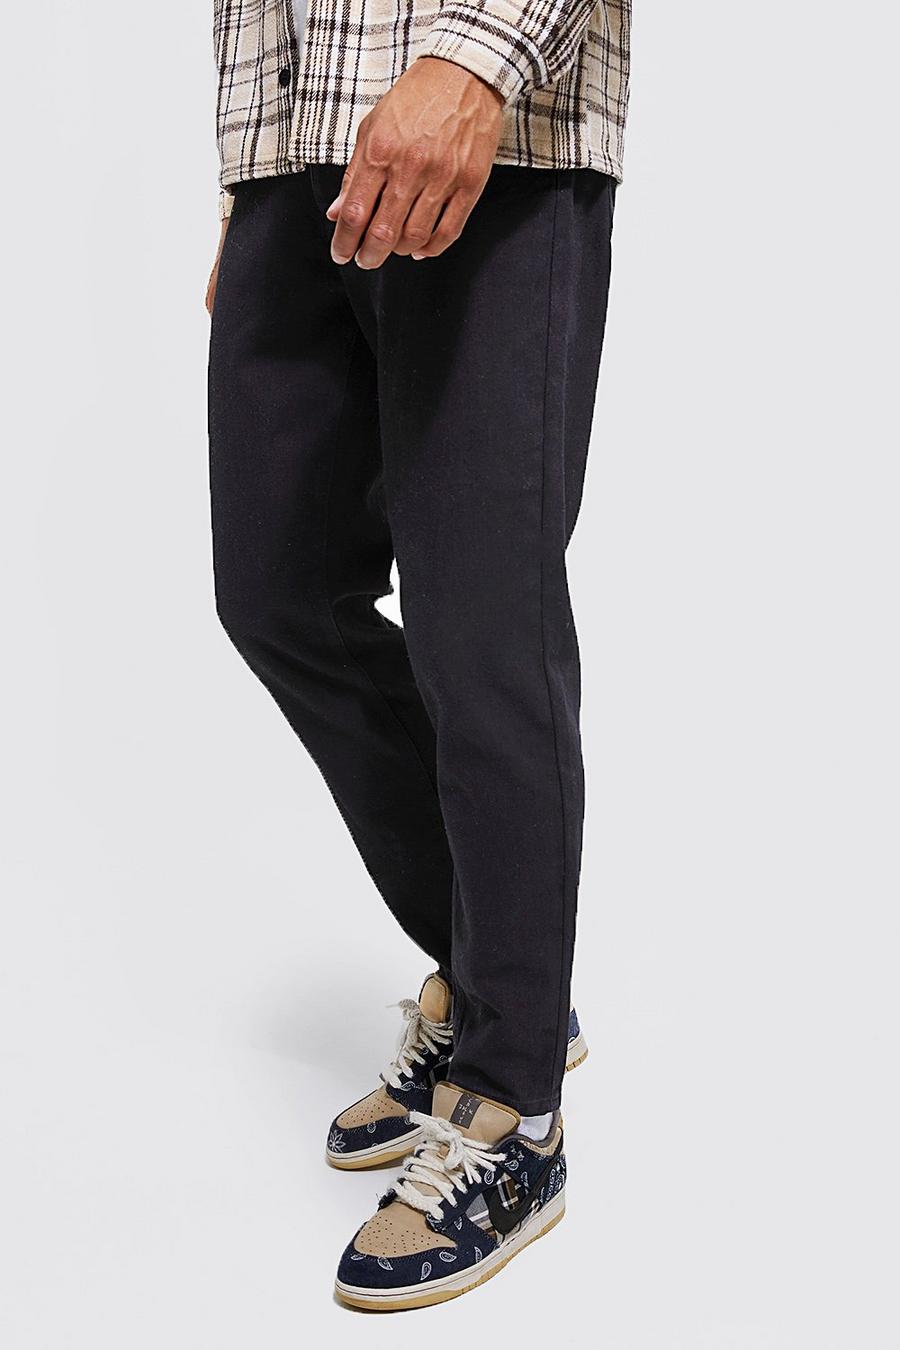 שחור אמיתי ג'ינס מבד קשיח בגזרת קרסול צרה, לגברים גבוהים image number 1